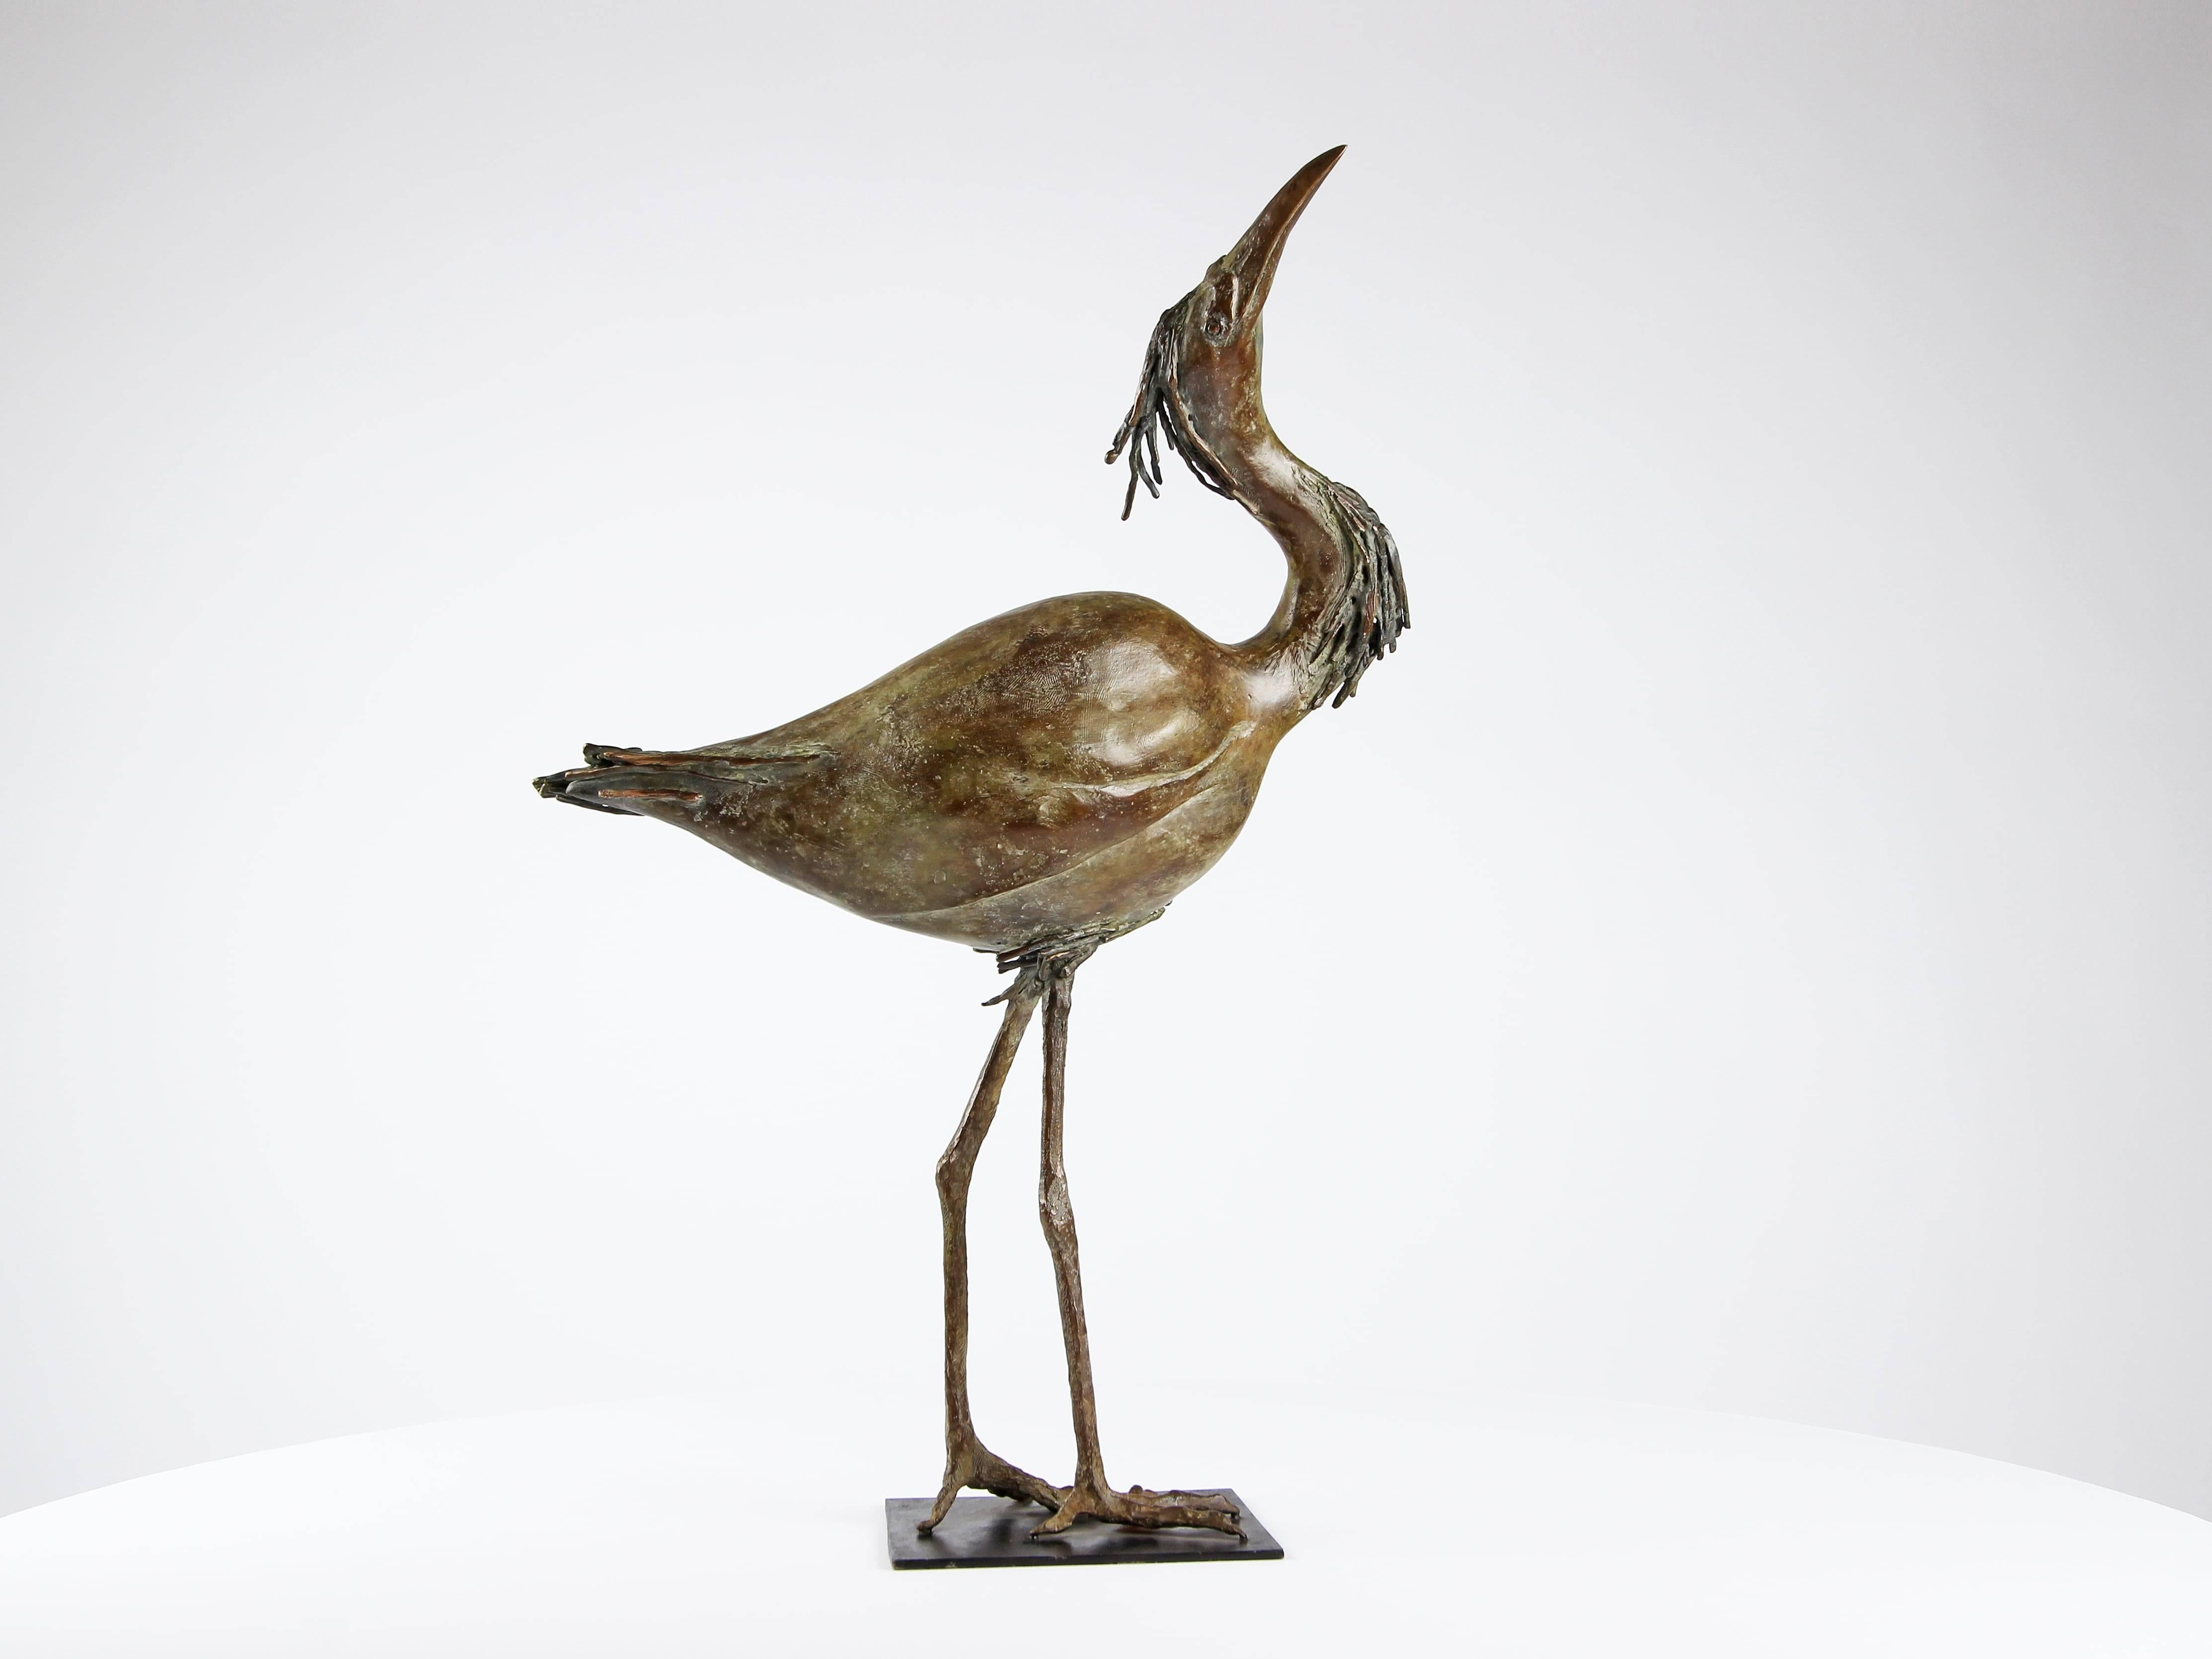 Garceta es una escultura de bronce única del artista contemporáneo Chésade, de dimensiones 60 × 21 × 42 cm. 
La escultura está firmada y se entrega con un certificado de autenticidad.

La escultura de Chésade forma parte de este nuevo movimiento